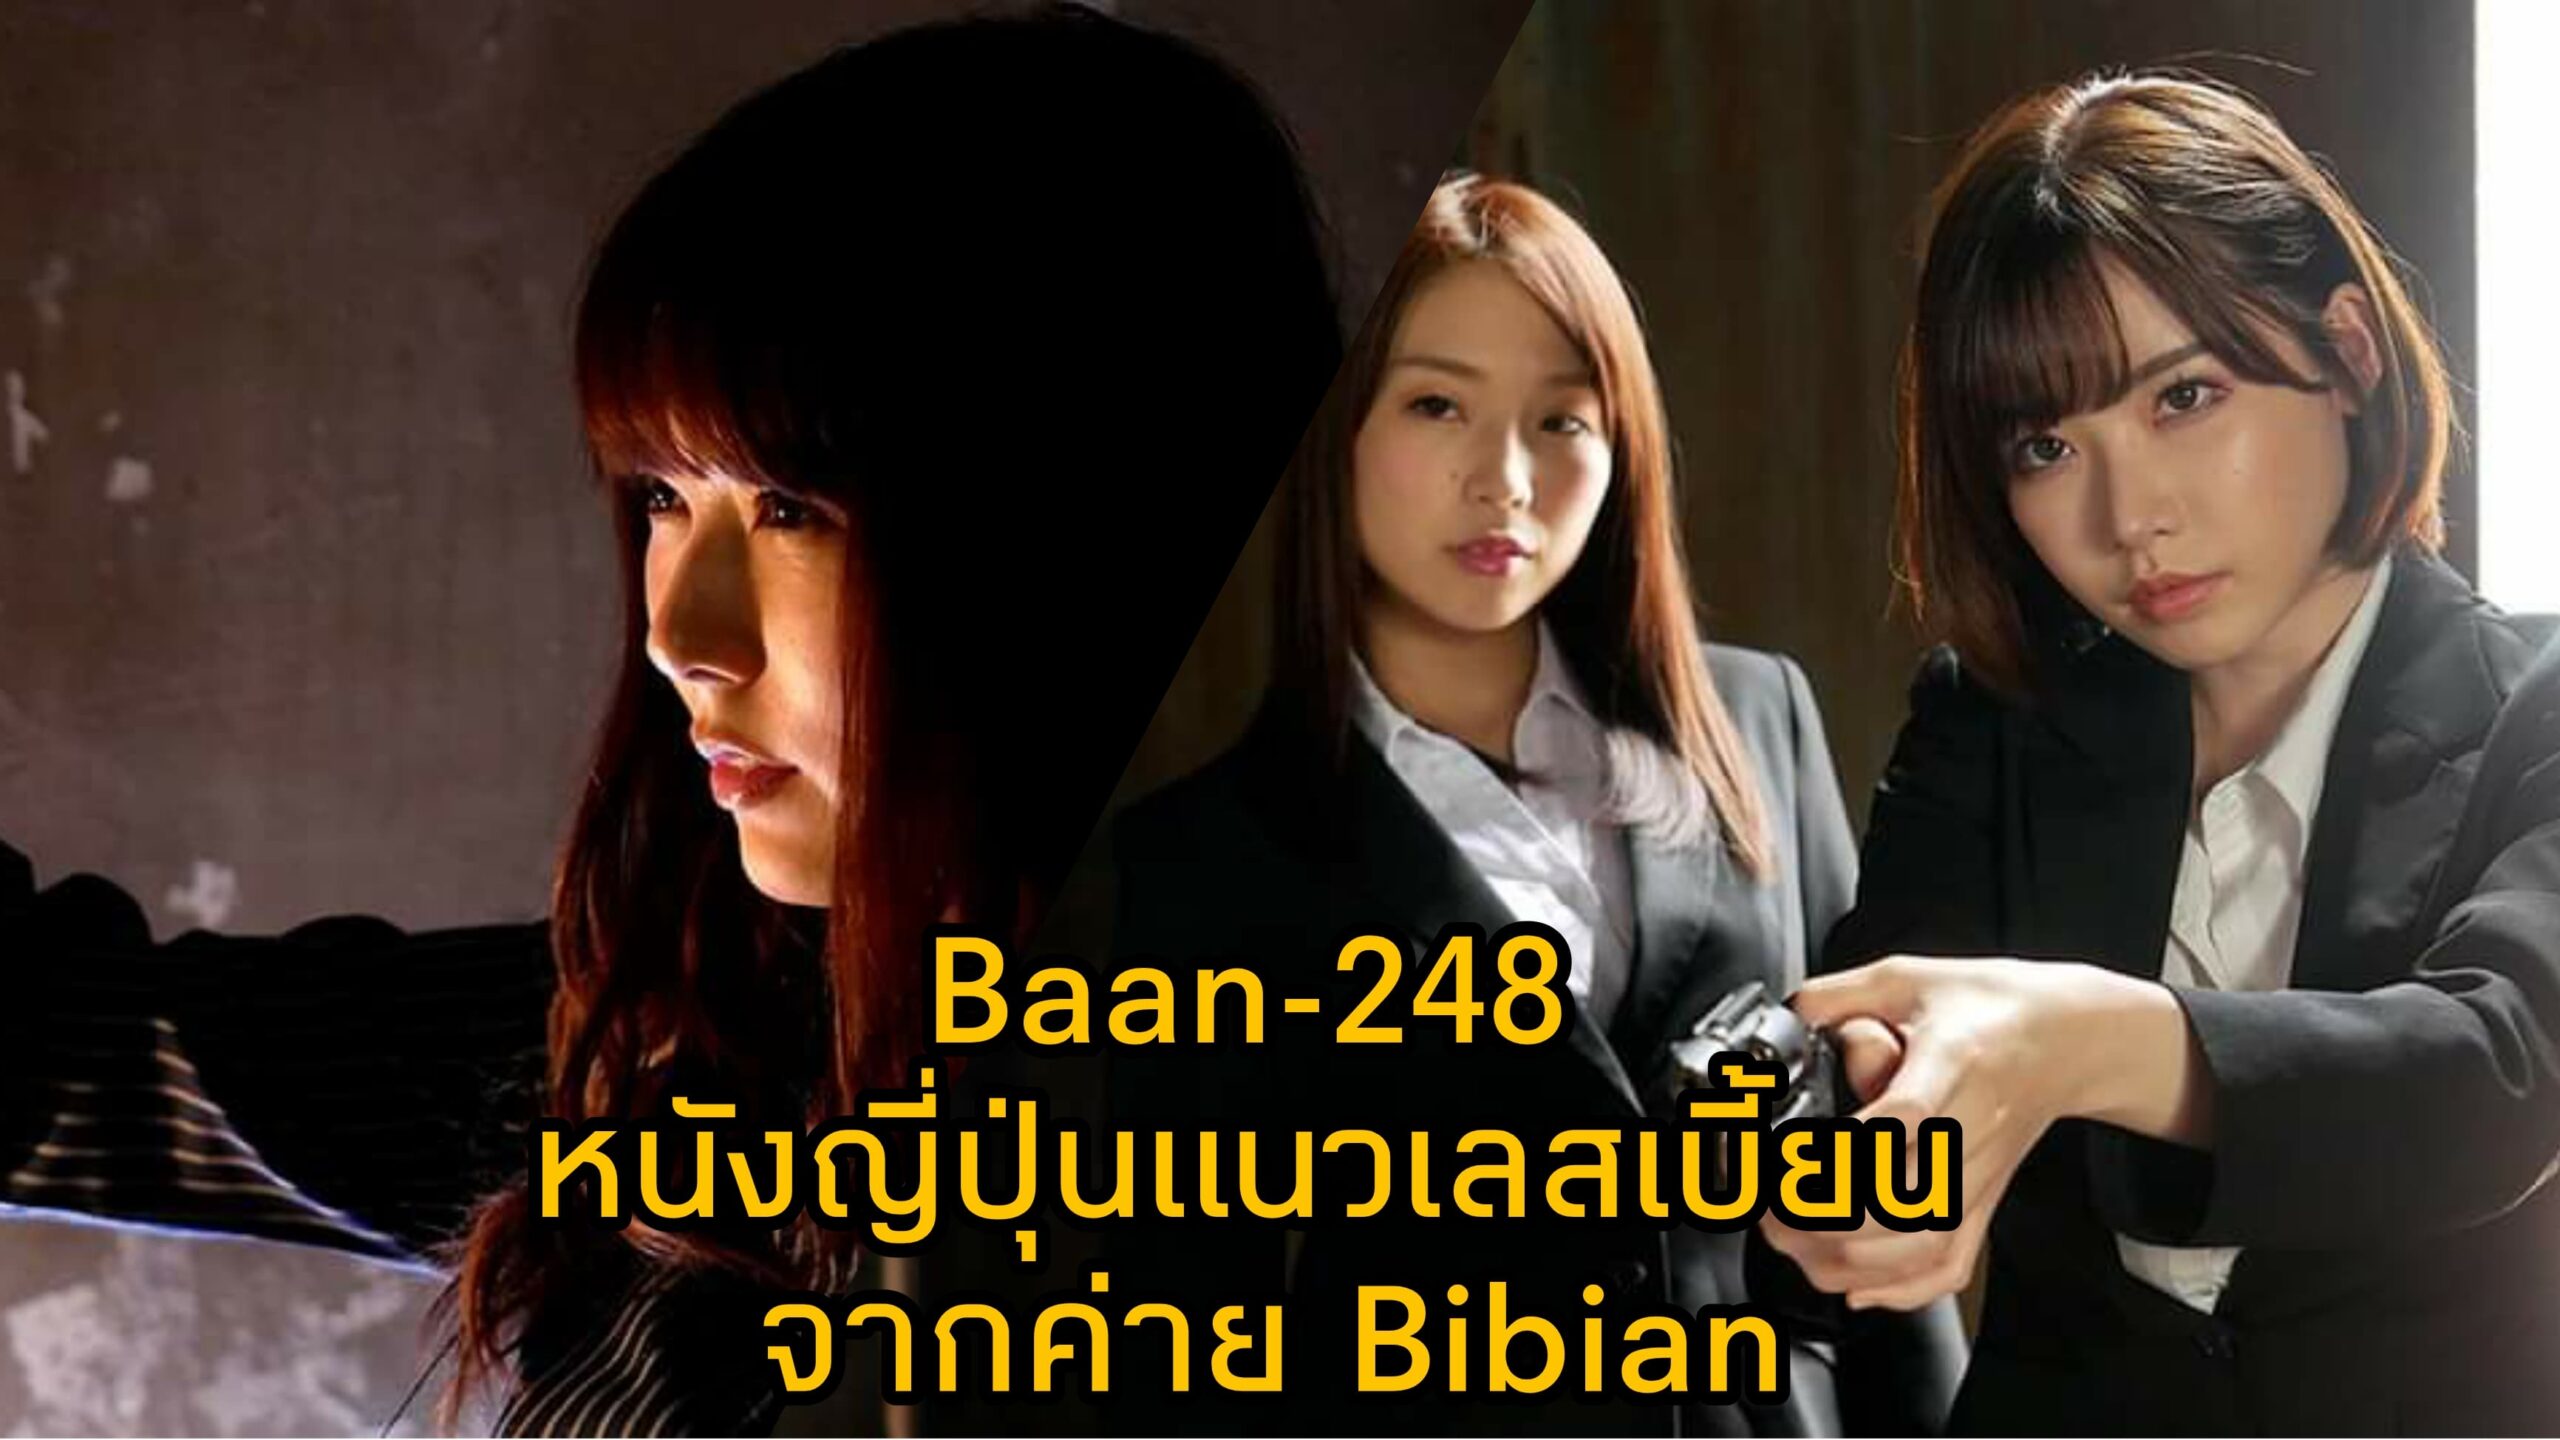 Bann-248 หนัง JAV แนวเลสเบี้ยน นำแสดงโดย 3 ตัวแม่แห่งวงการเอวี Eimi Fukada 14